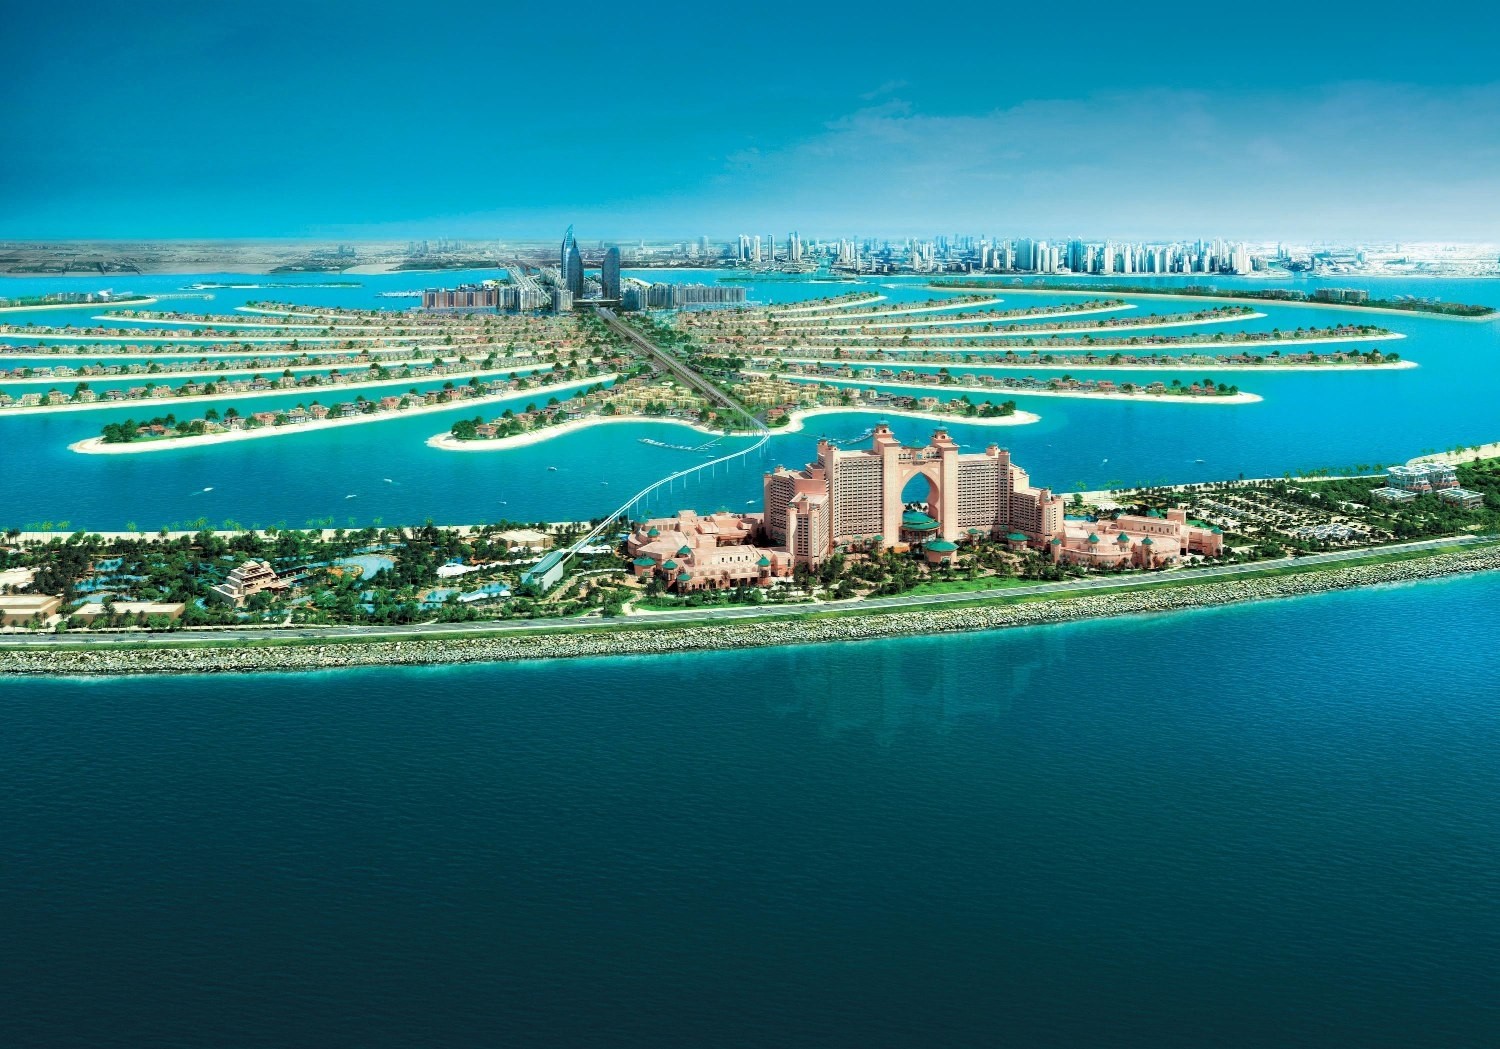 General 1500x1049 landscape photography cityscape modern urban aerial view architecture sea skyscraper Dubai United Arab Emirates